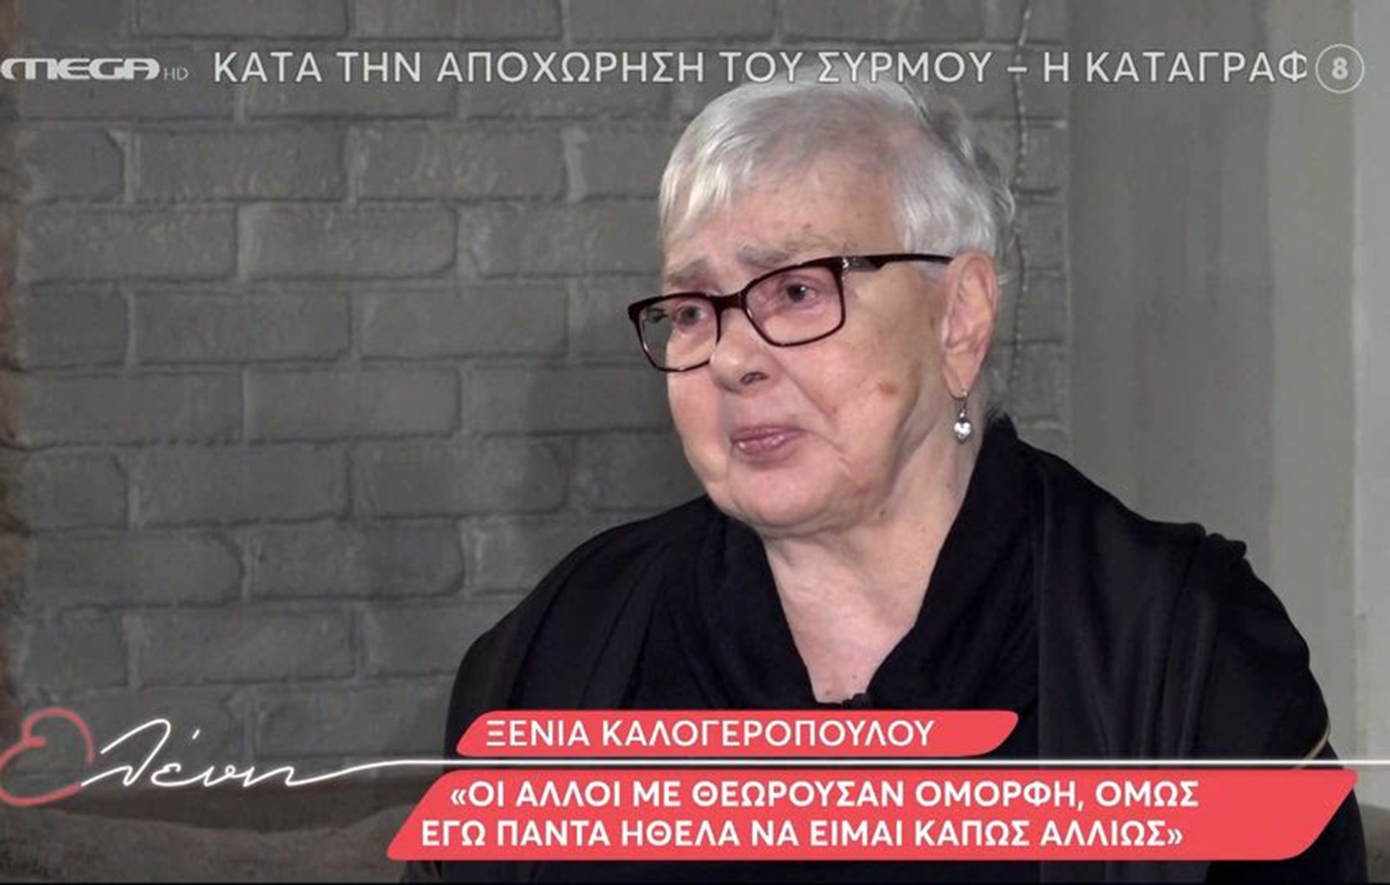 Ξένια Καλογεροπούλου: Ήταν οδυνηρή ιστορία οι 4 αποβολές που είχα, όποια γυναίκα έχει ζήσει κάτι παρόμοιο, ξέρει